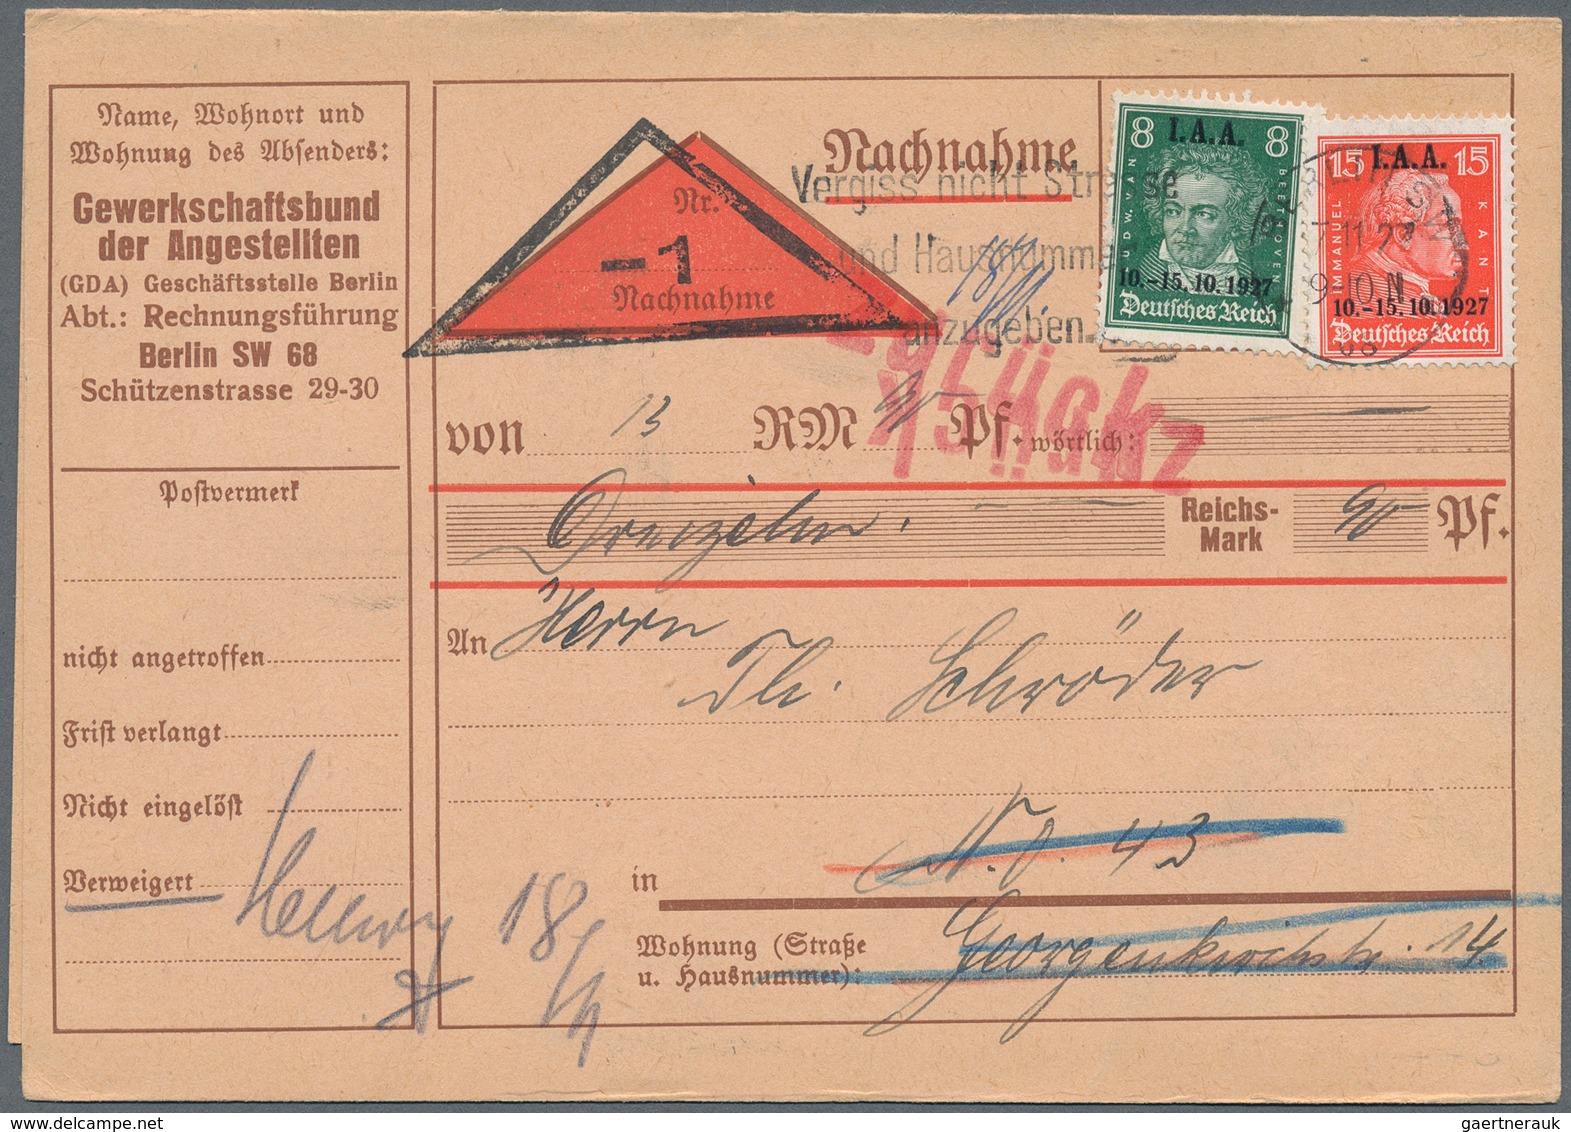 Deutsches Reich - Weimar: 1927, Tagung Des. Int. Arbeitsamtes: 8 Pf Schwarzopalgrün U. 15 Pf Zinnobe - Unused Stamps